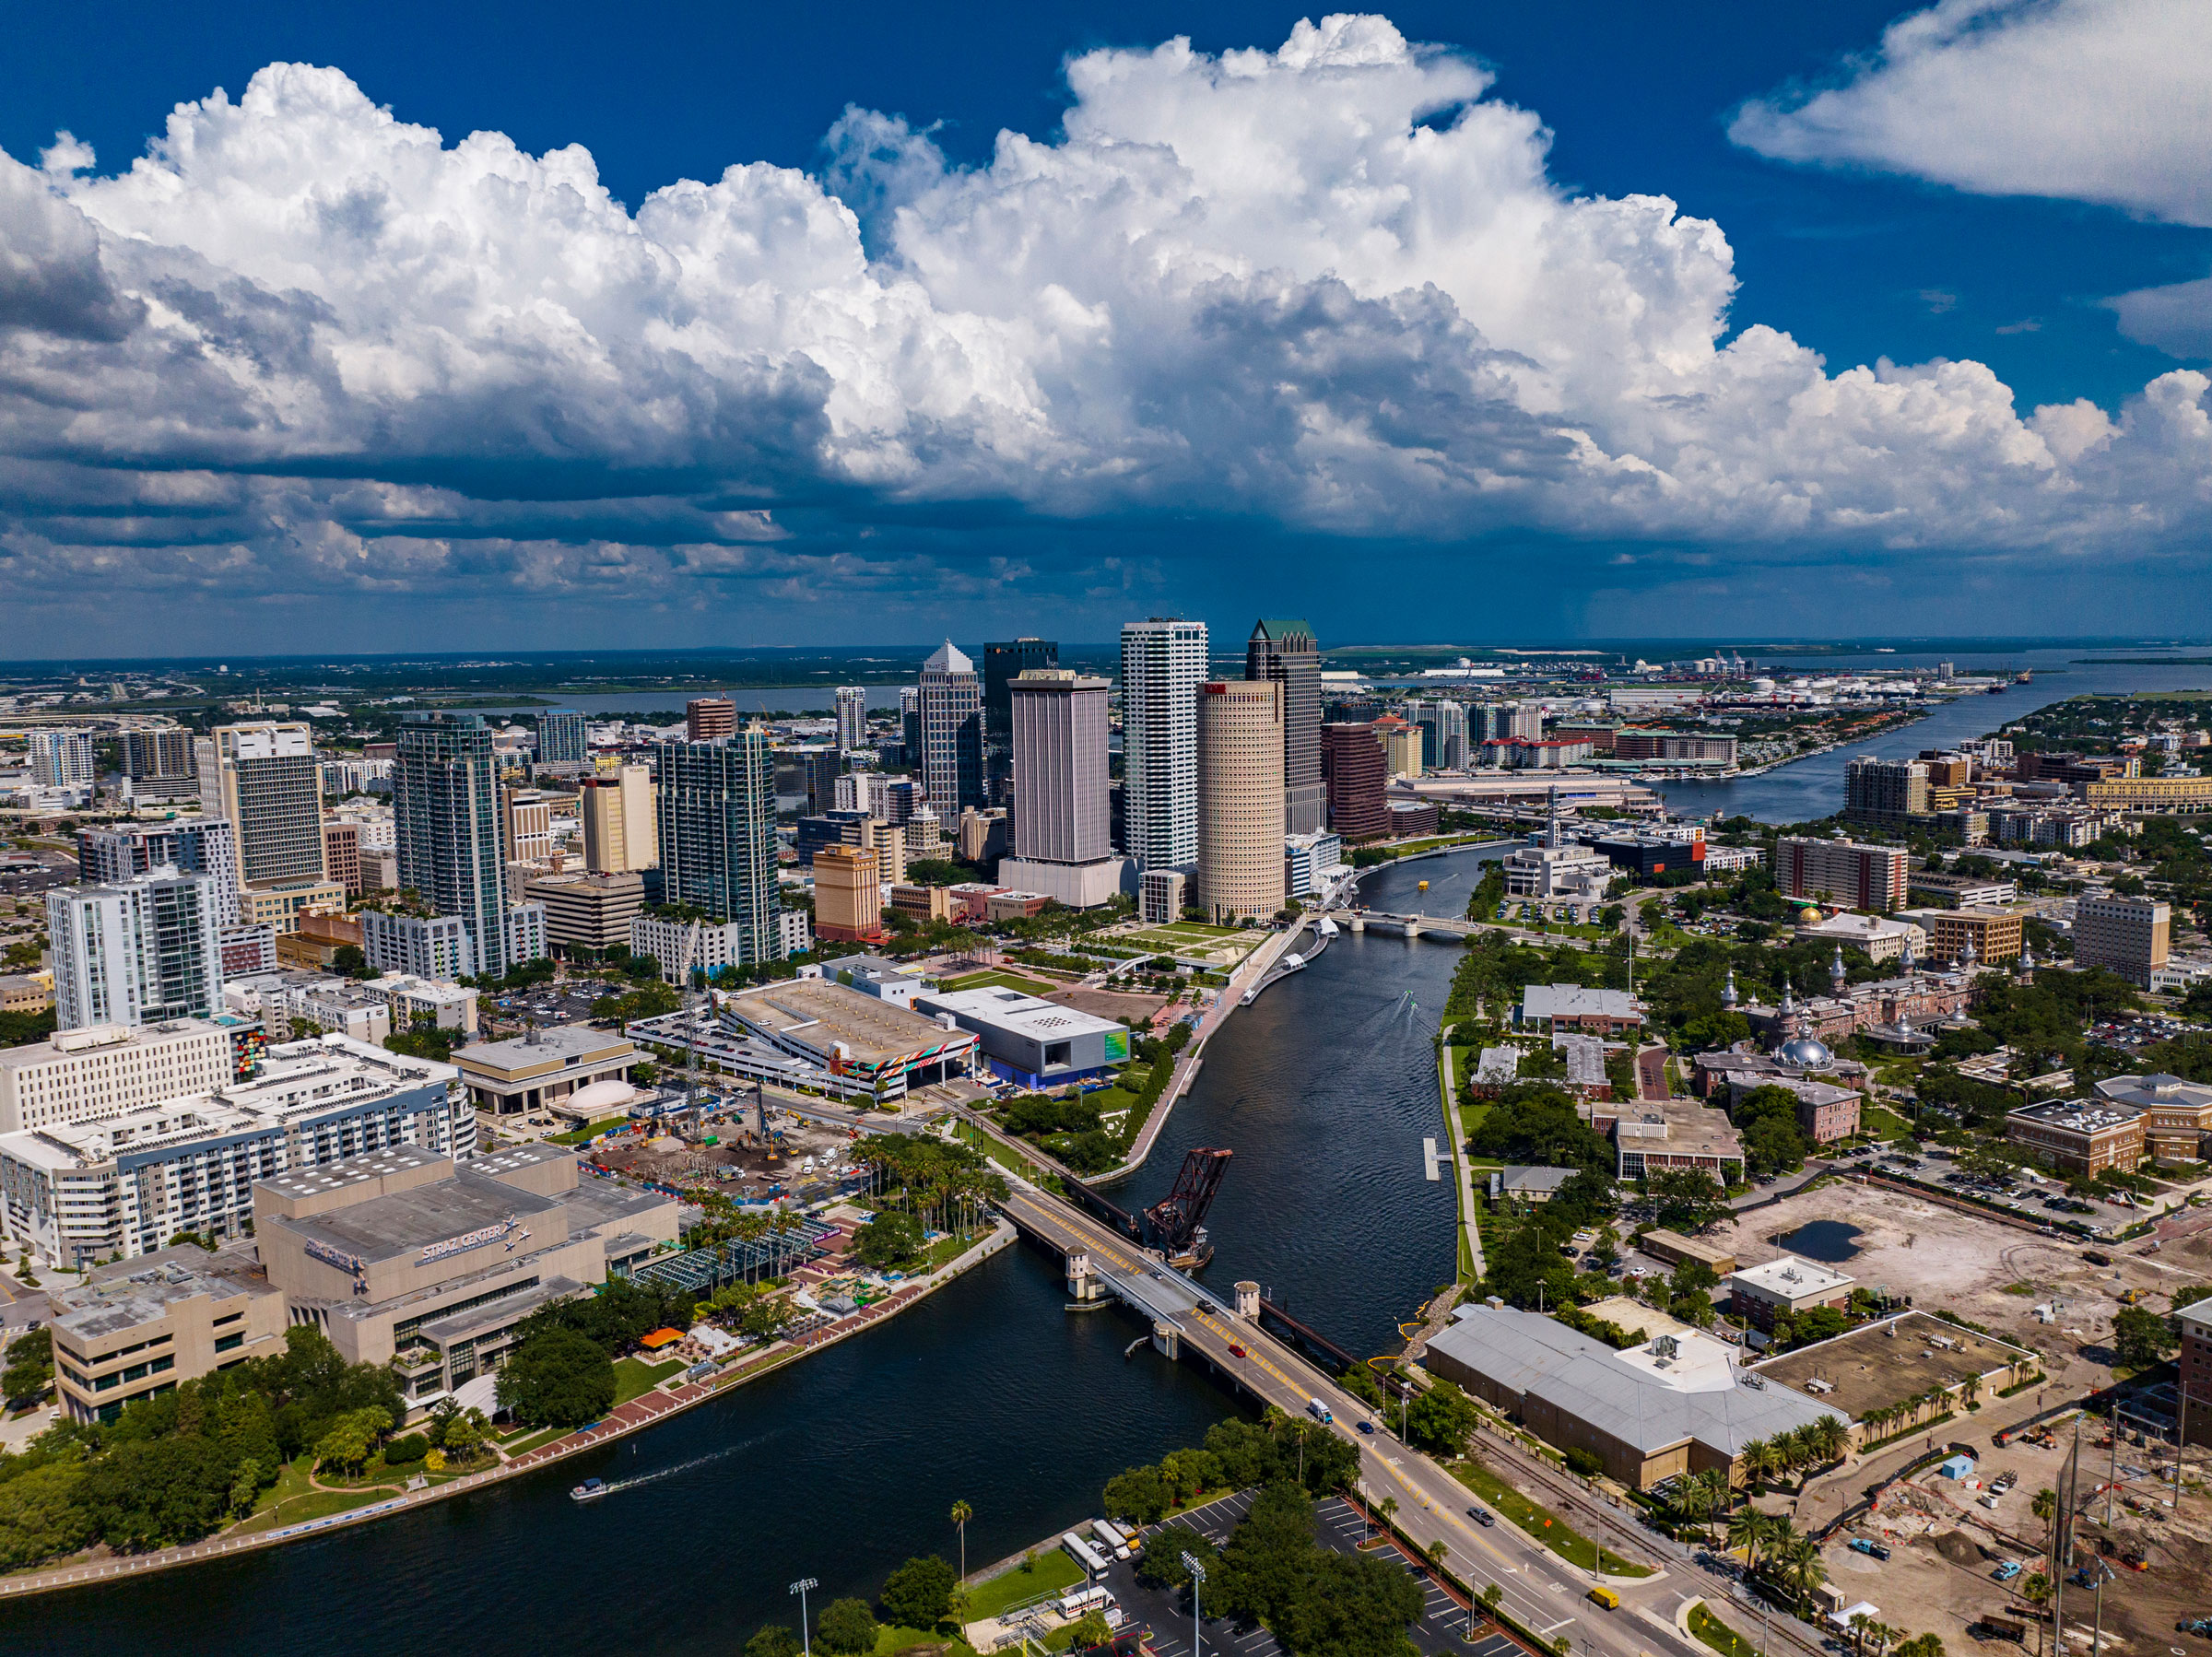 Actividades populares según el clima en Tampa